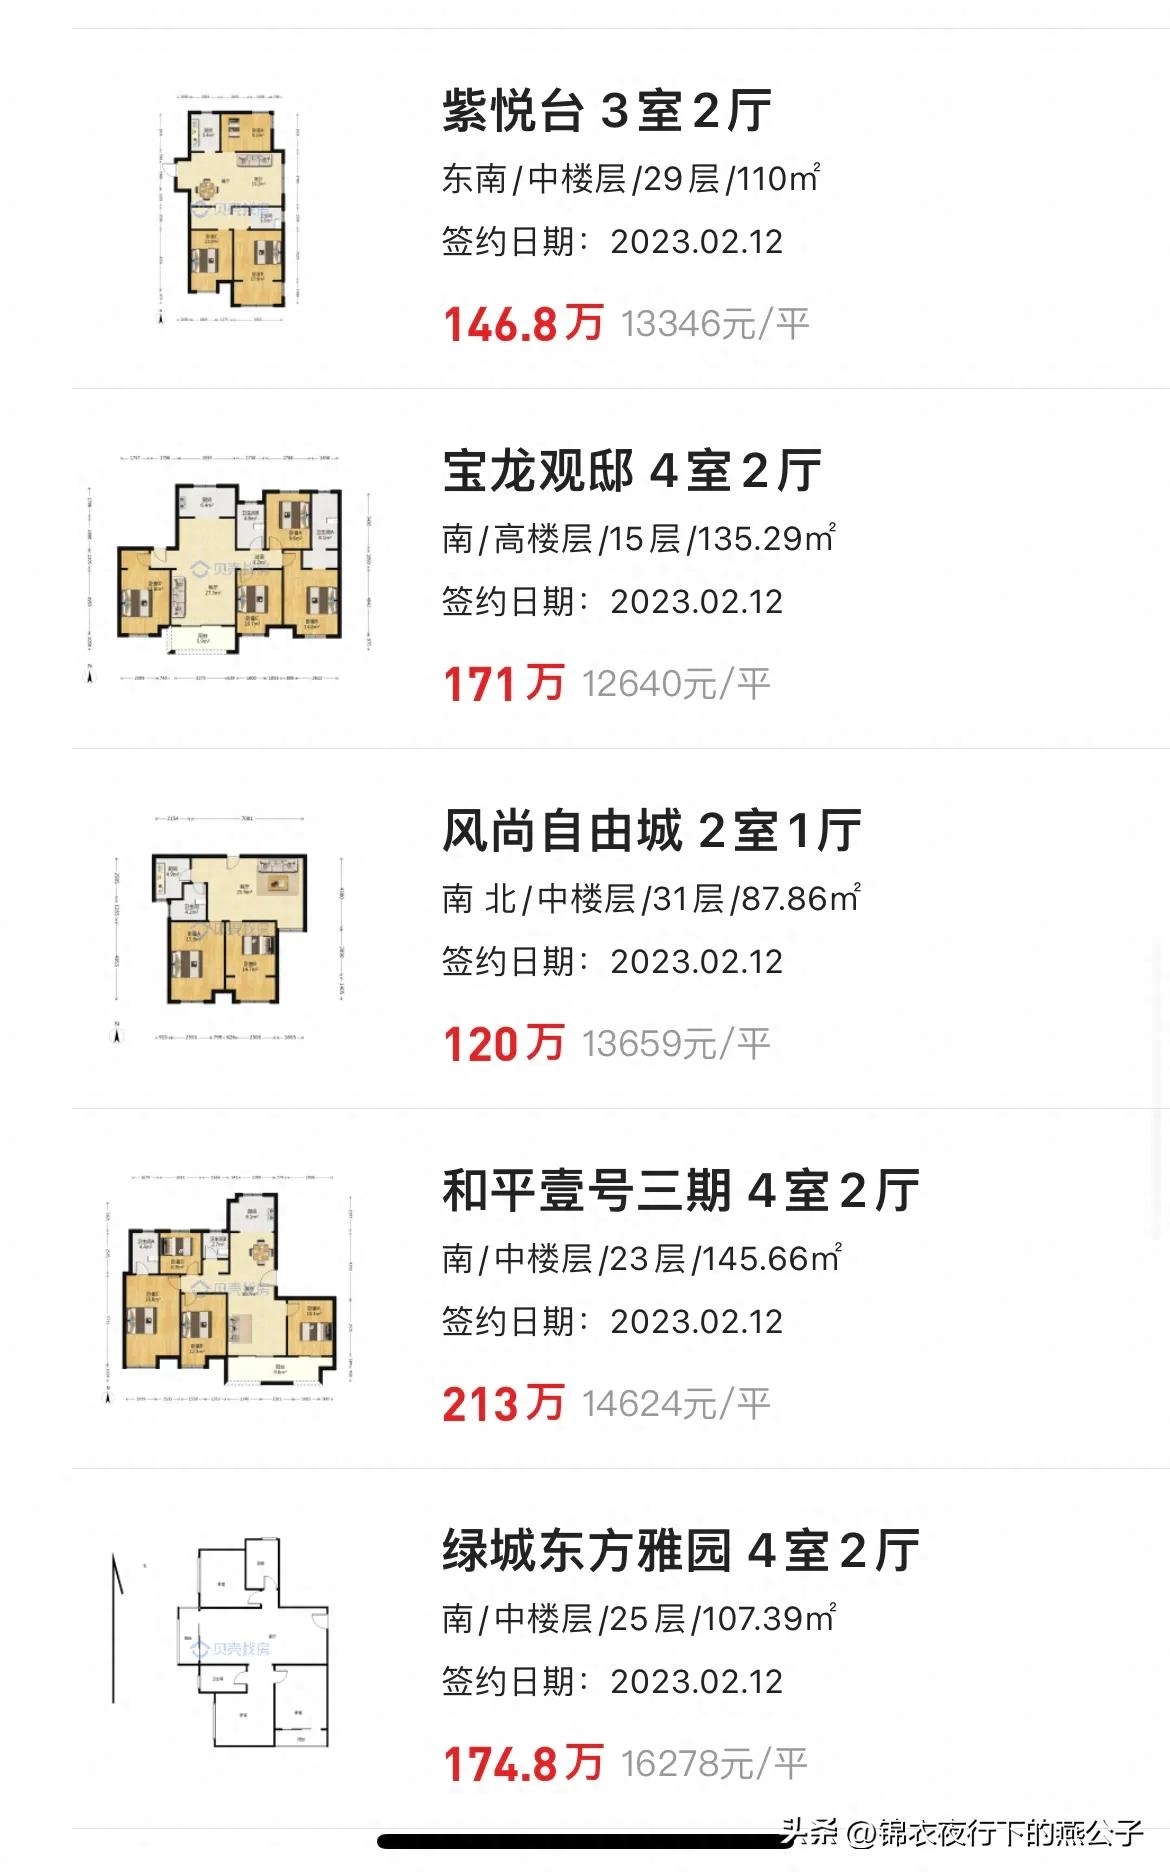 上海绿地世纪城房价多少_绿地世纪城二期 上海 价格_上海绿地世纪城一期二手房价格